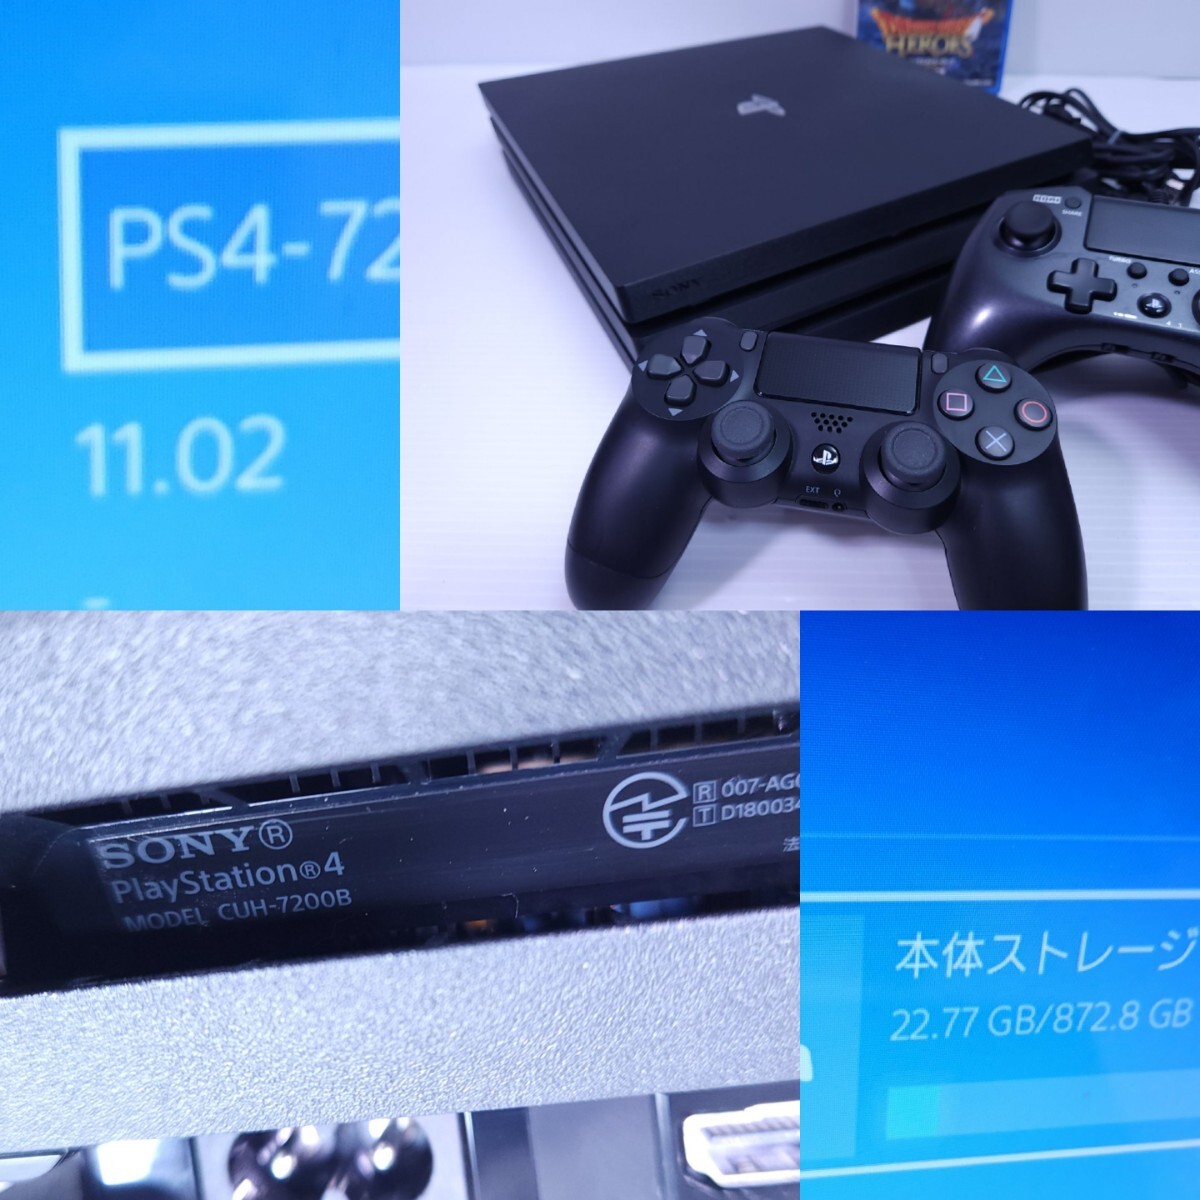 美品/動作品PS4 Pro本体 1TB SONY PlayStation4 PRO CUH-7200B F.W 11.02プレステ4 + ゲームソフト/HDMI セット(~M-62)_画像3